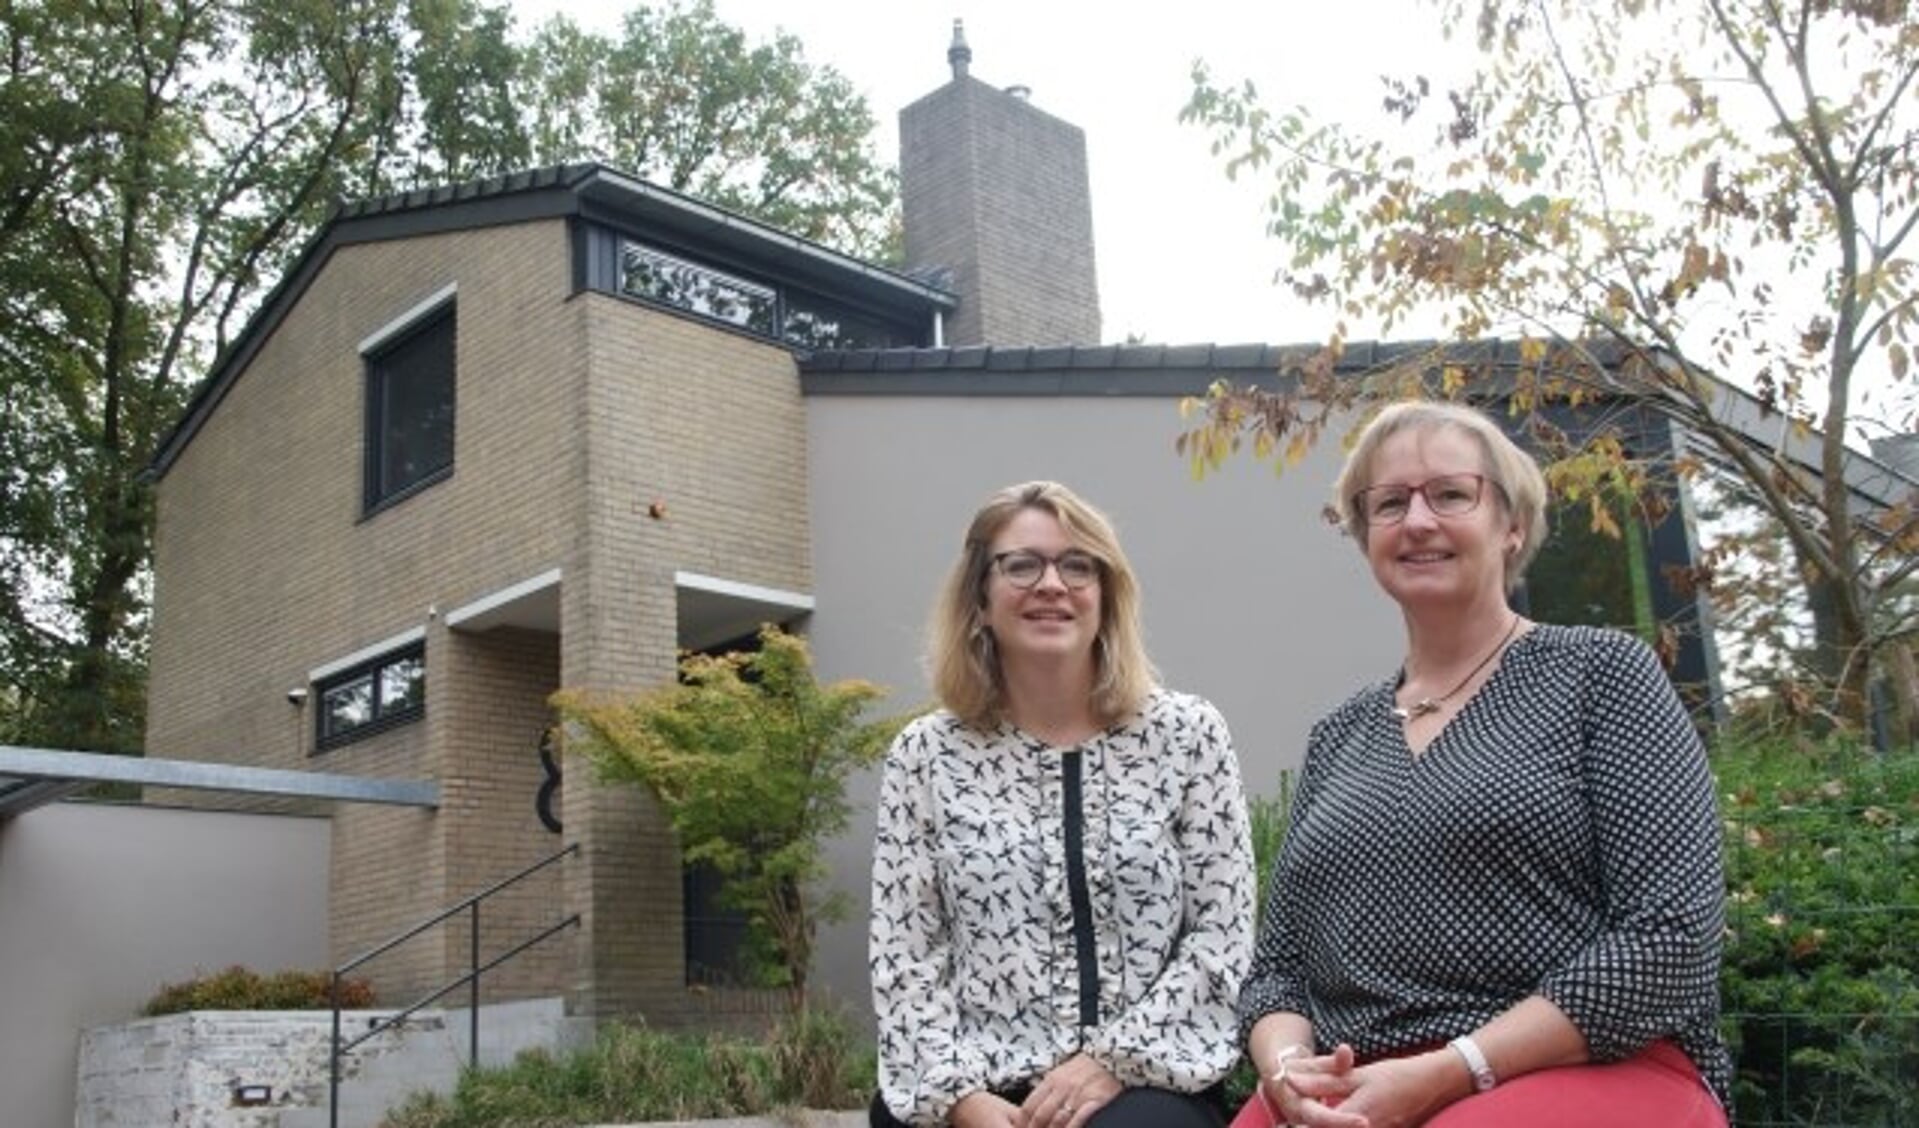 Wethouder Anne Janssen (links) is blij dat Nora van den Broek haar huis openstelt tijdens de Duurzame Huizenroute. 